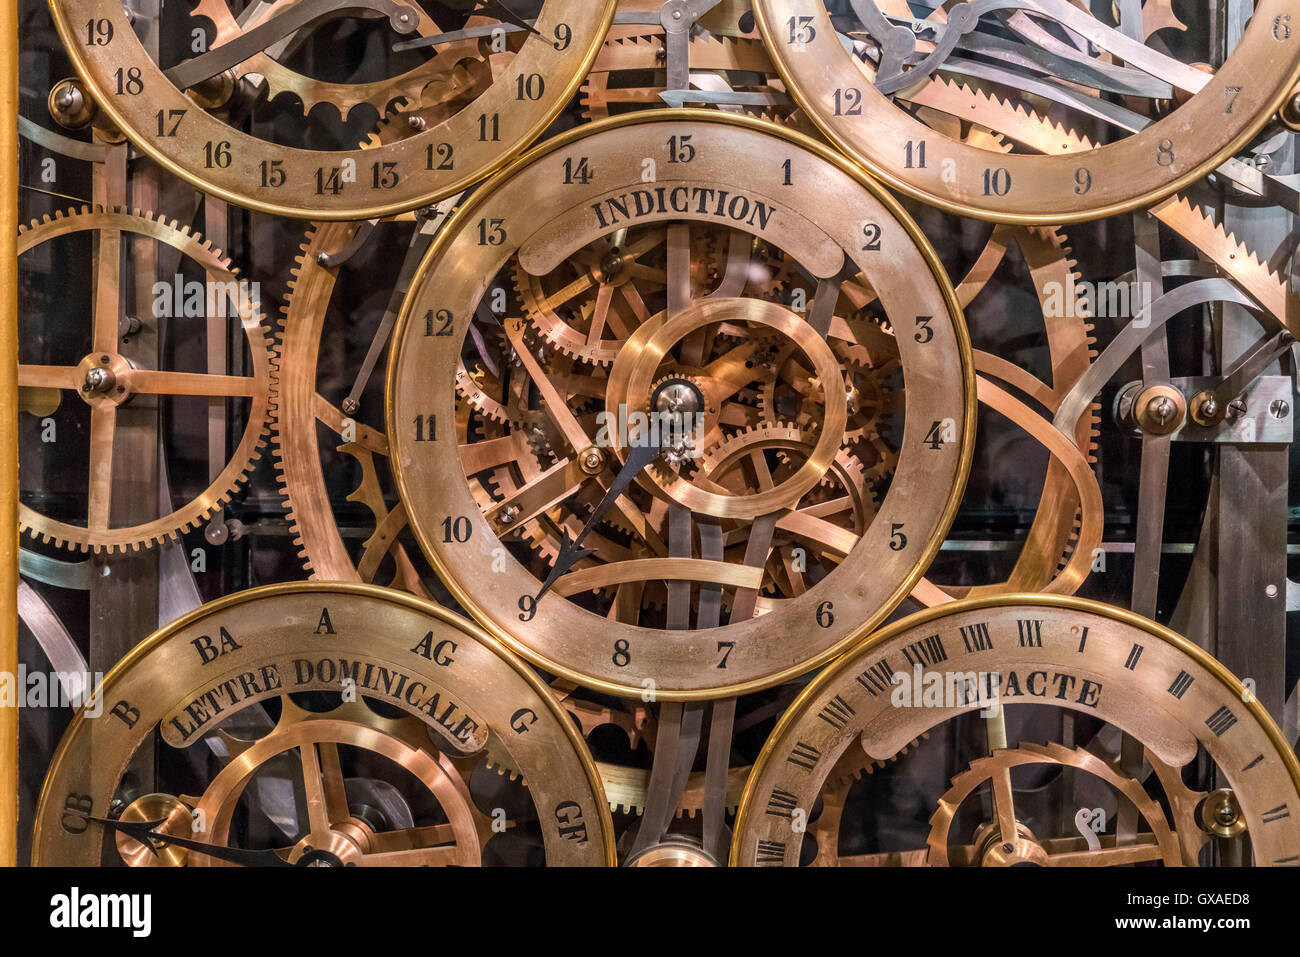 astronomischen Uhr Im Straßburger Münster in Straßburg, Elsass, Frankreich | Astronomische Uhr des Straßburger Münsters Stockfoto